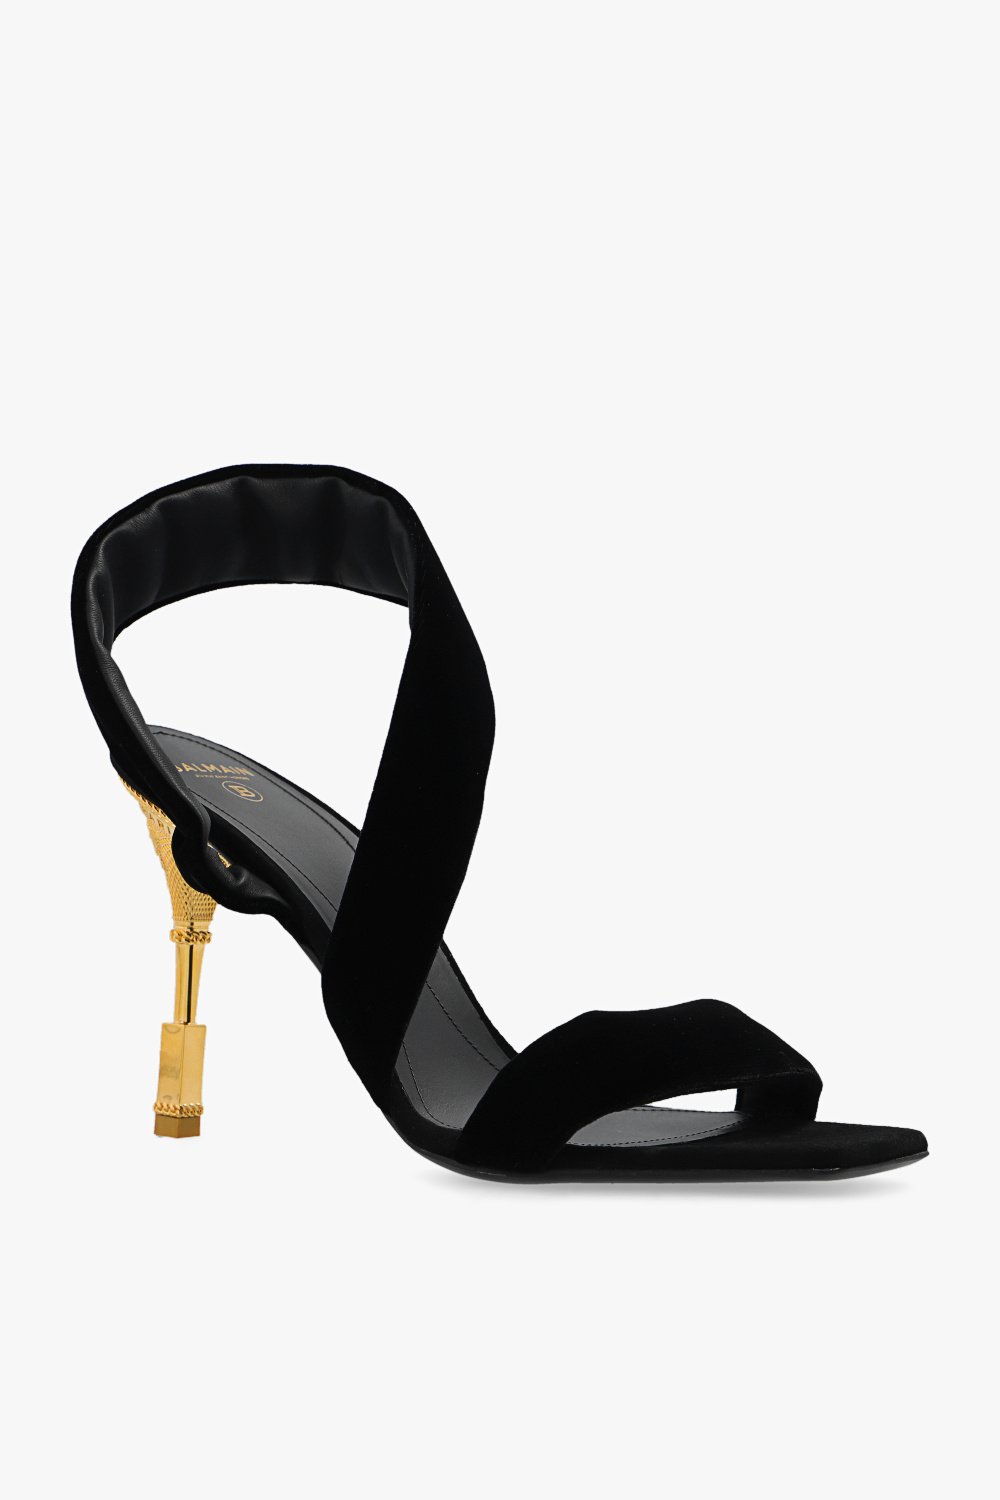 Balmain ‘Moneta’ heeled sandals